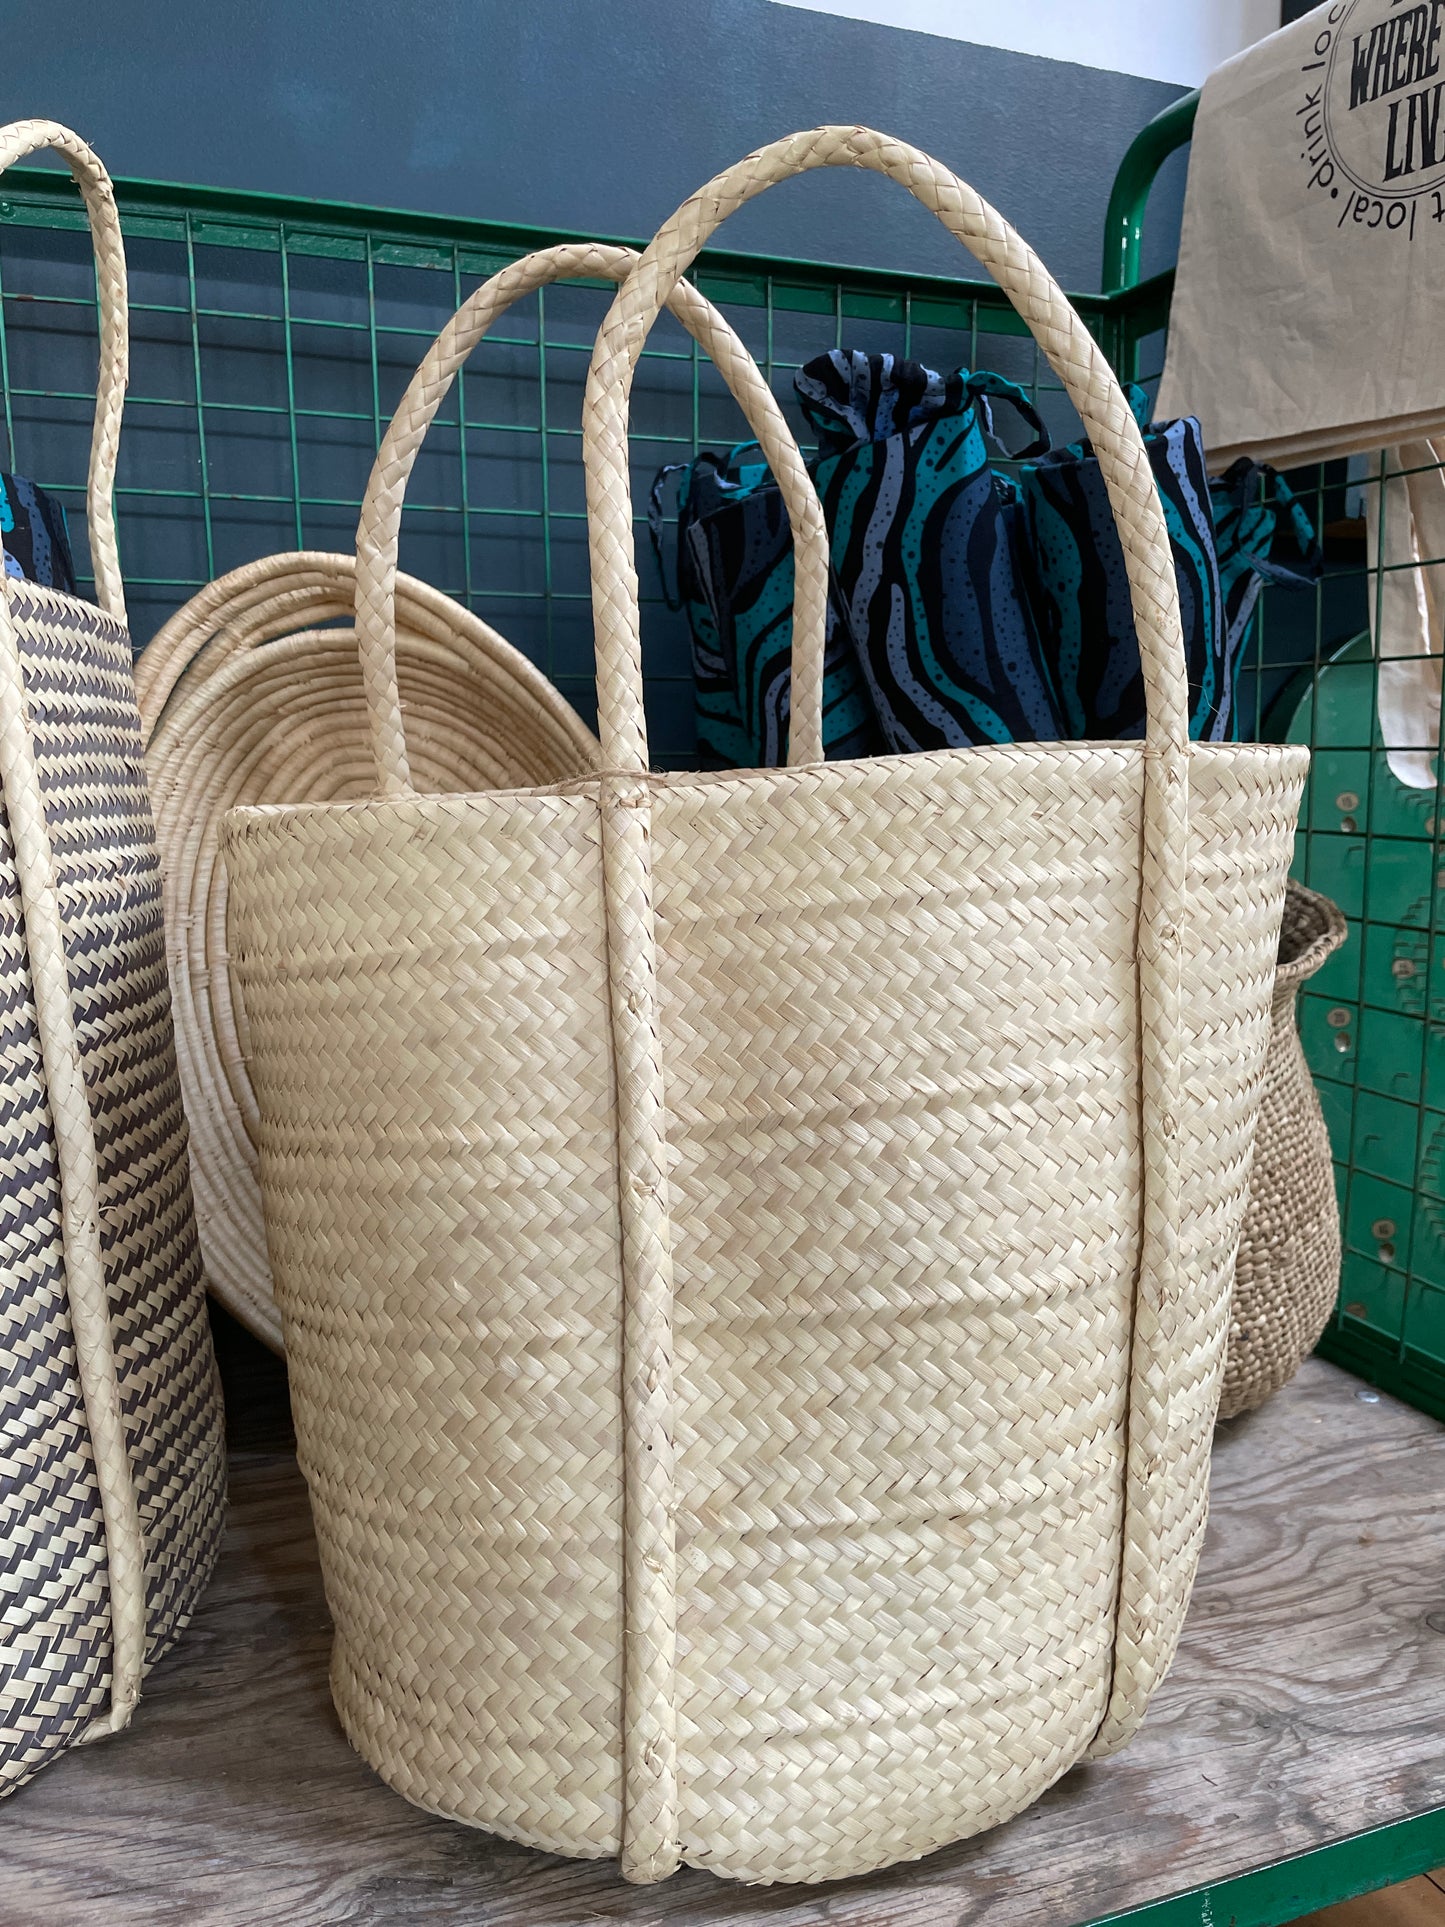 Palm leaf basket - natural with handles